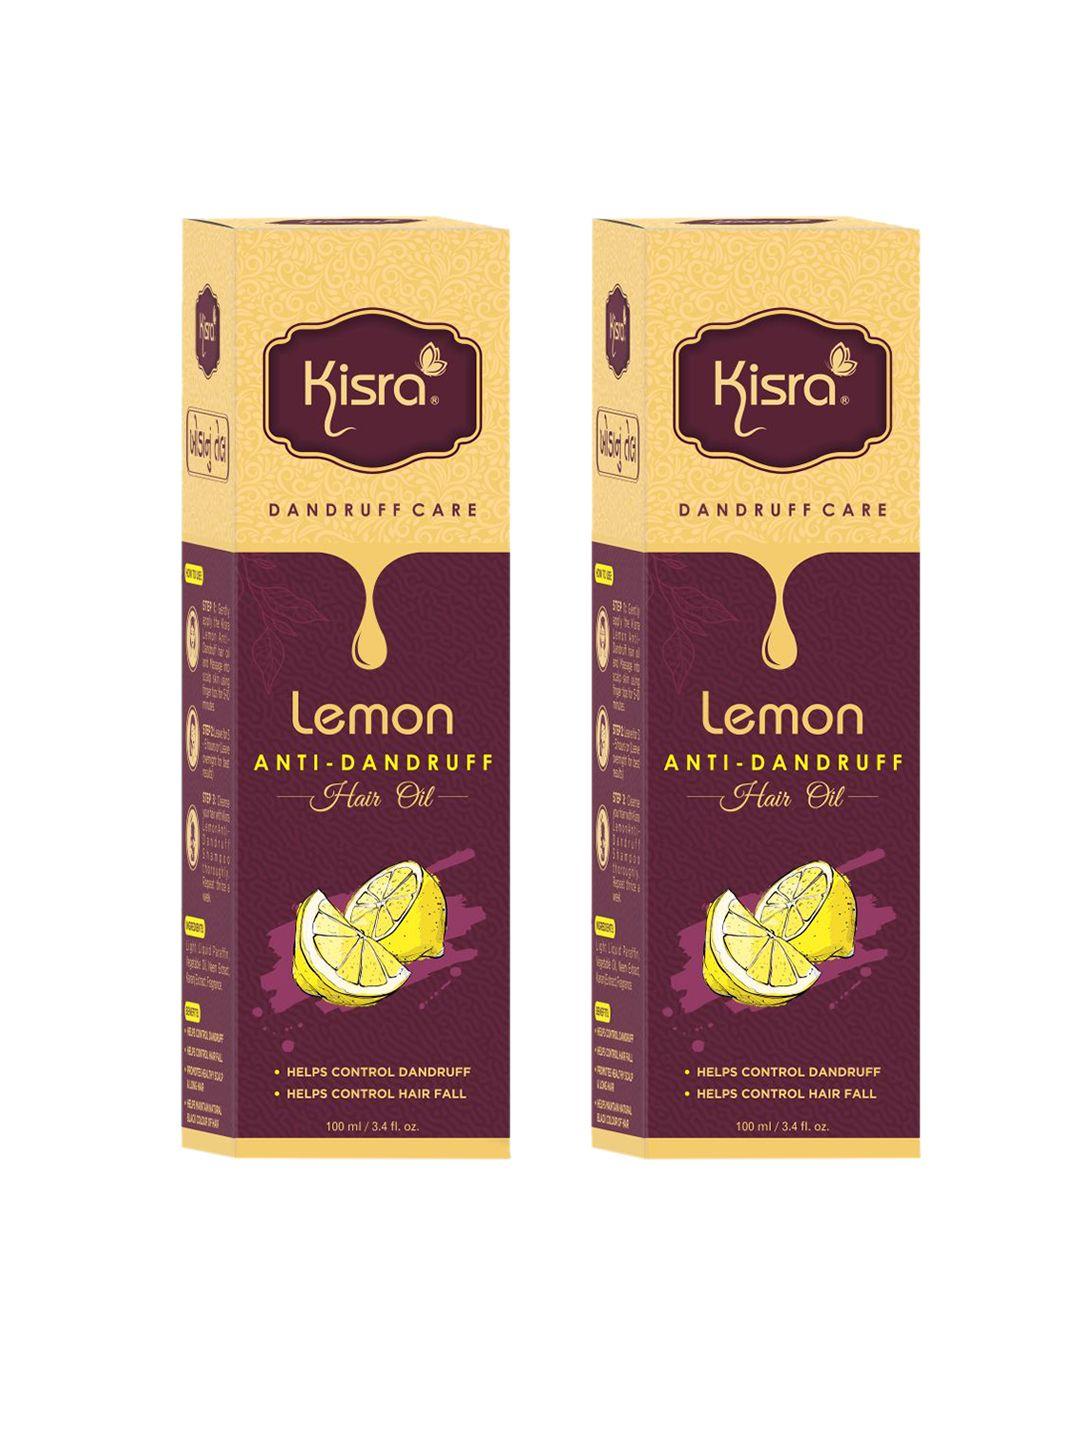 kisra set of 2 lemon anti-dandruff hair oil with neem - 100ml each